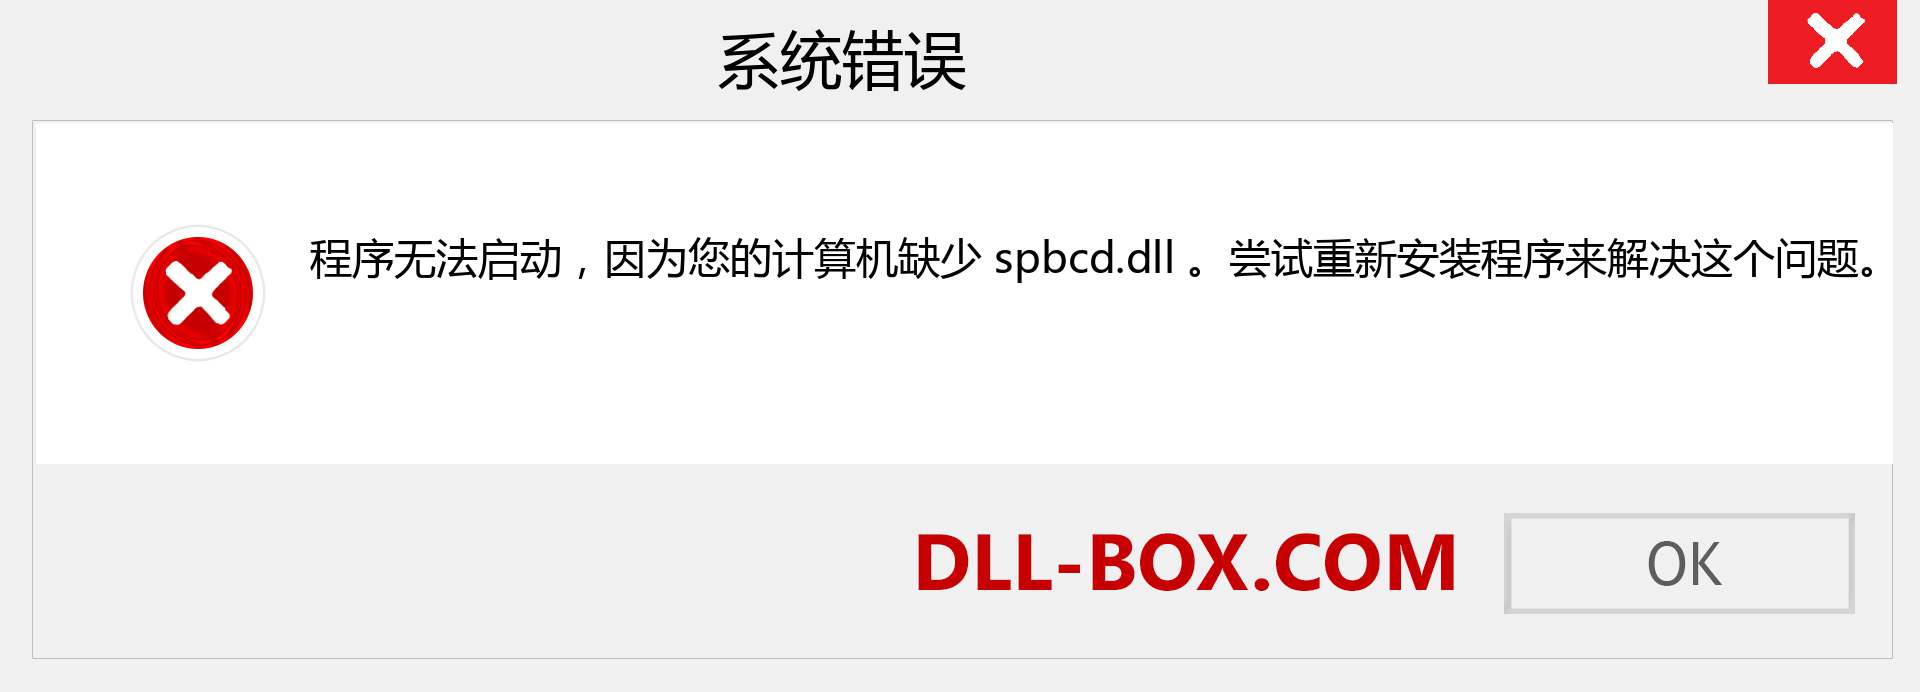 spbcd.dll 文件丢失？。 适用于 Windows 7、8、10 的下载 - 修复 Windows、照片、图像上的 spbcd dll 丢失错误